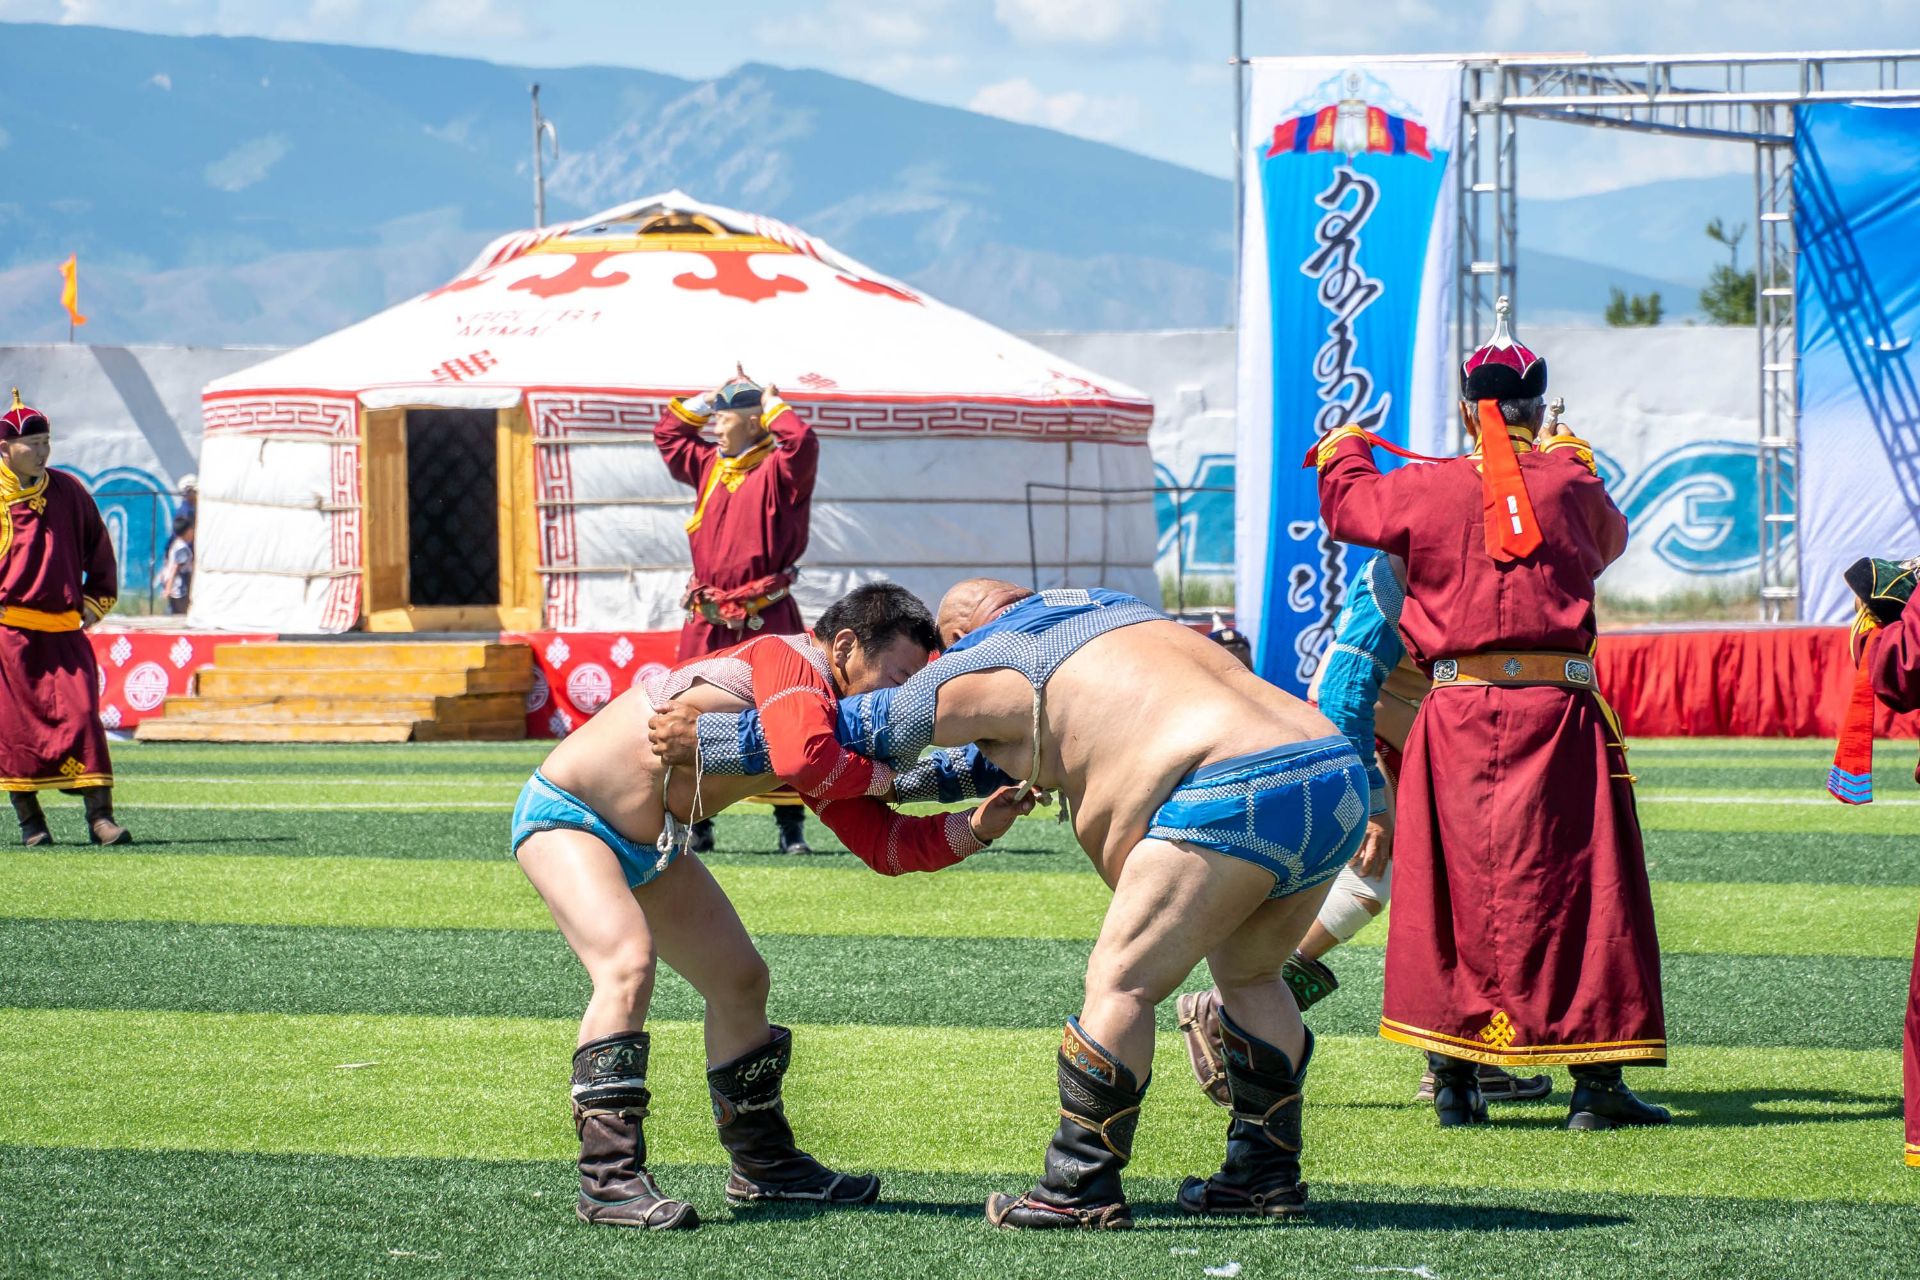 跑到乡村参加蒙古全国最大的节日—那达慕大会!  那达慕是蒙古最大的节日，在7月份举办。这几天的时间里